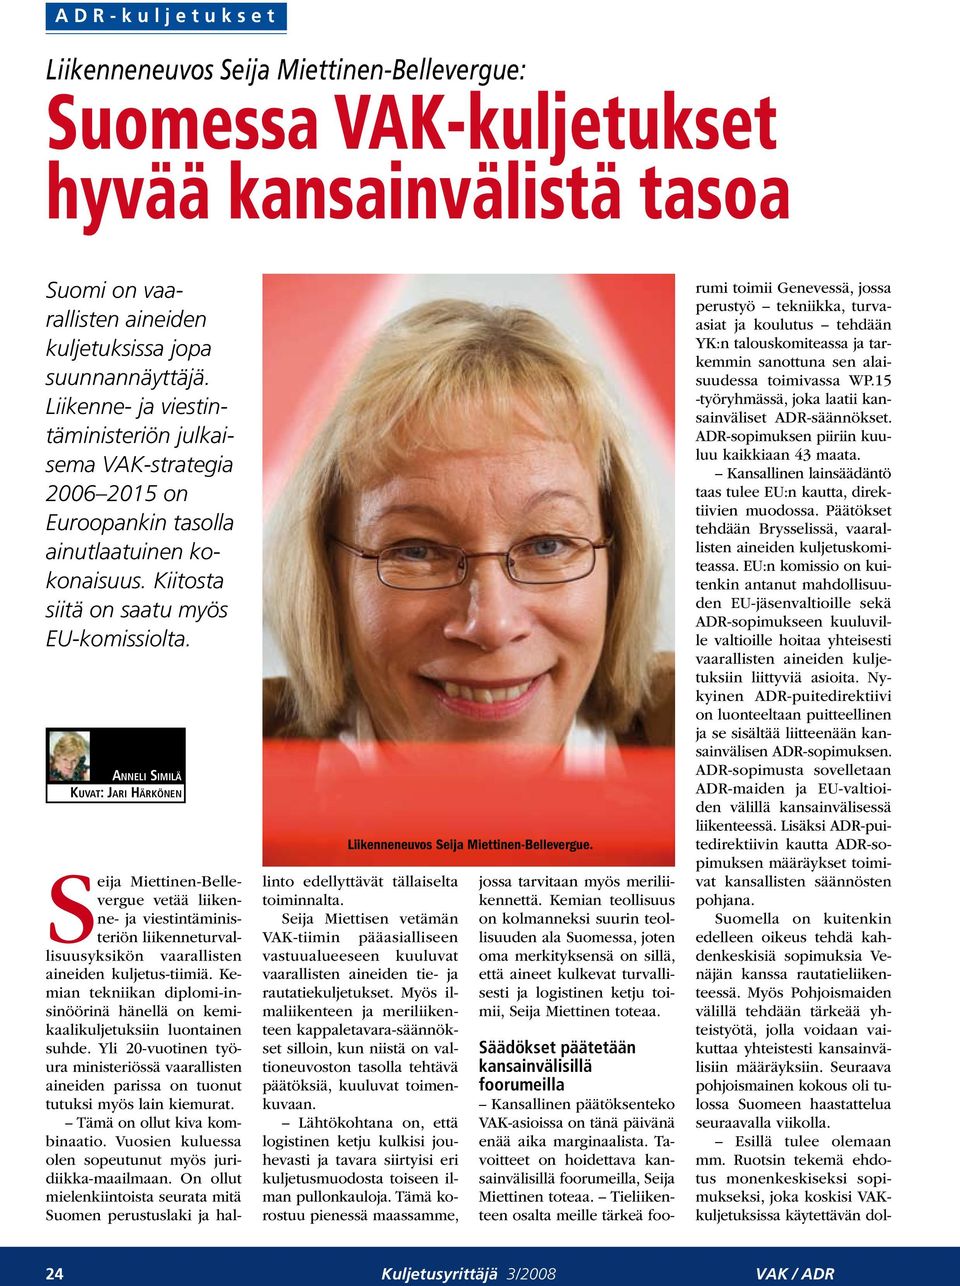 Anneli Similä Kuvat: Jari Härkönen Liikenneneuvos Seija Miettinen-Bellevergue.